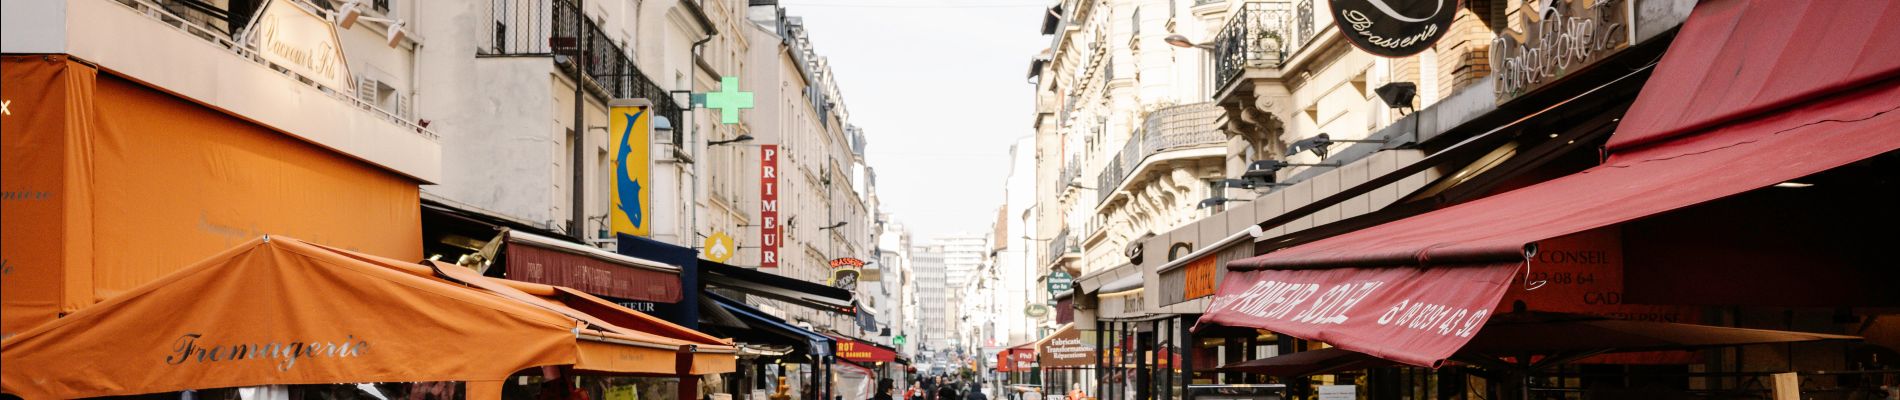 Punto de interés París - Rue Daguerre, commerçante et animée - Photo